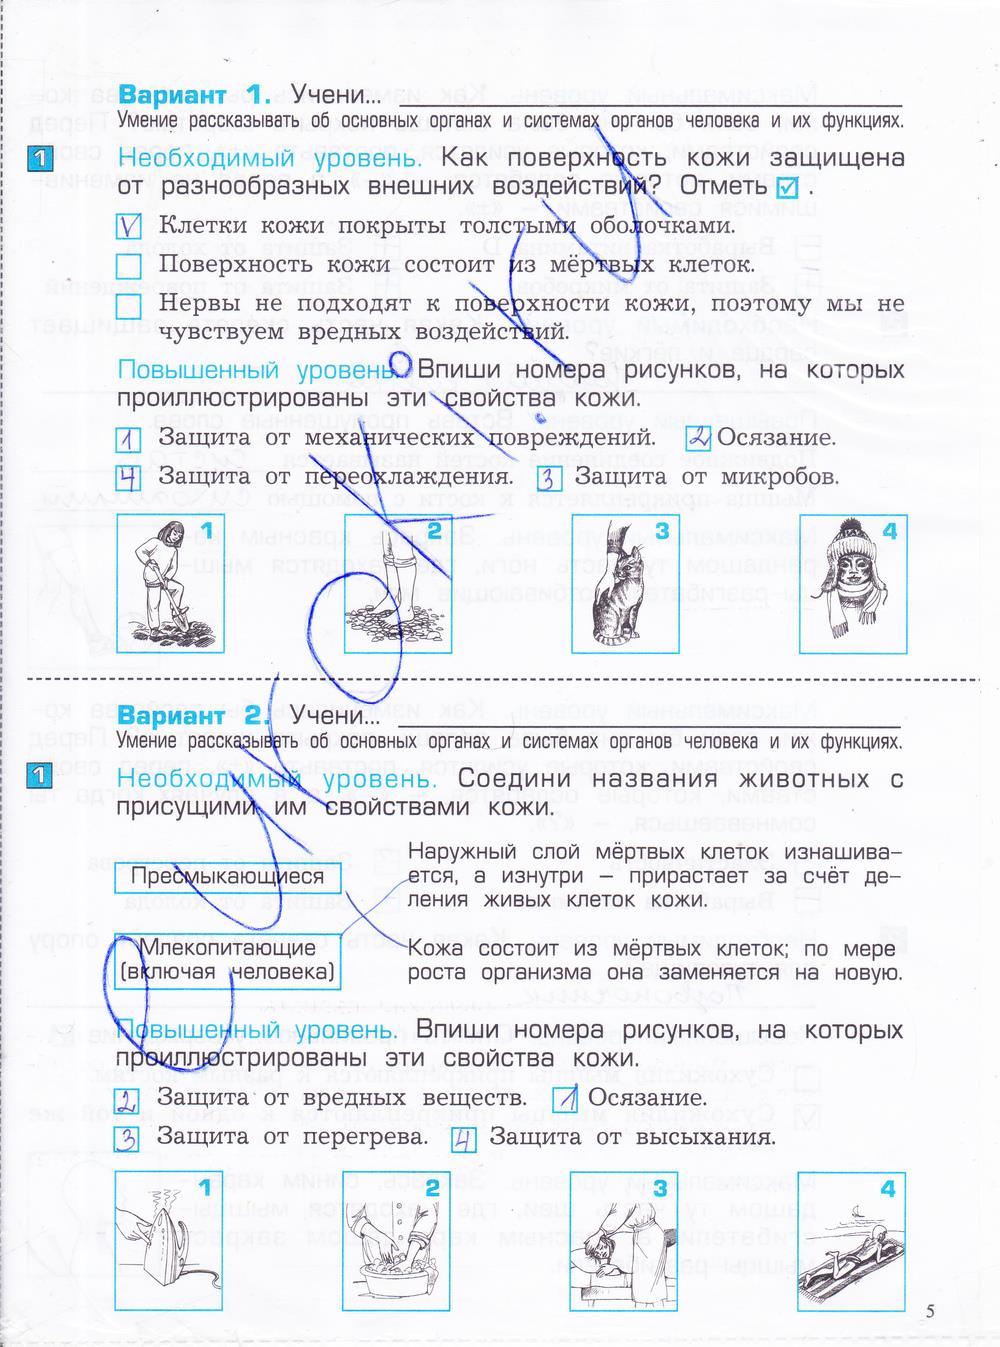 гдз 4 класс проверочные и контрольные работы часть 1 страница 5 окружающий мир Вахрушев, Бурский, Родыгина